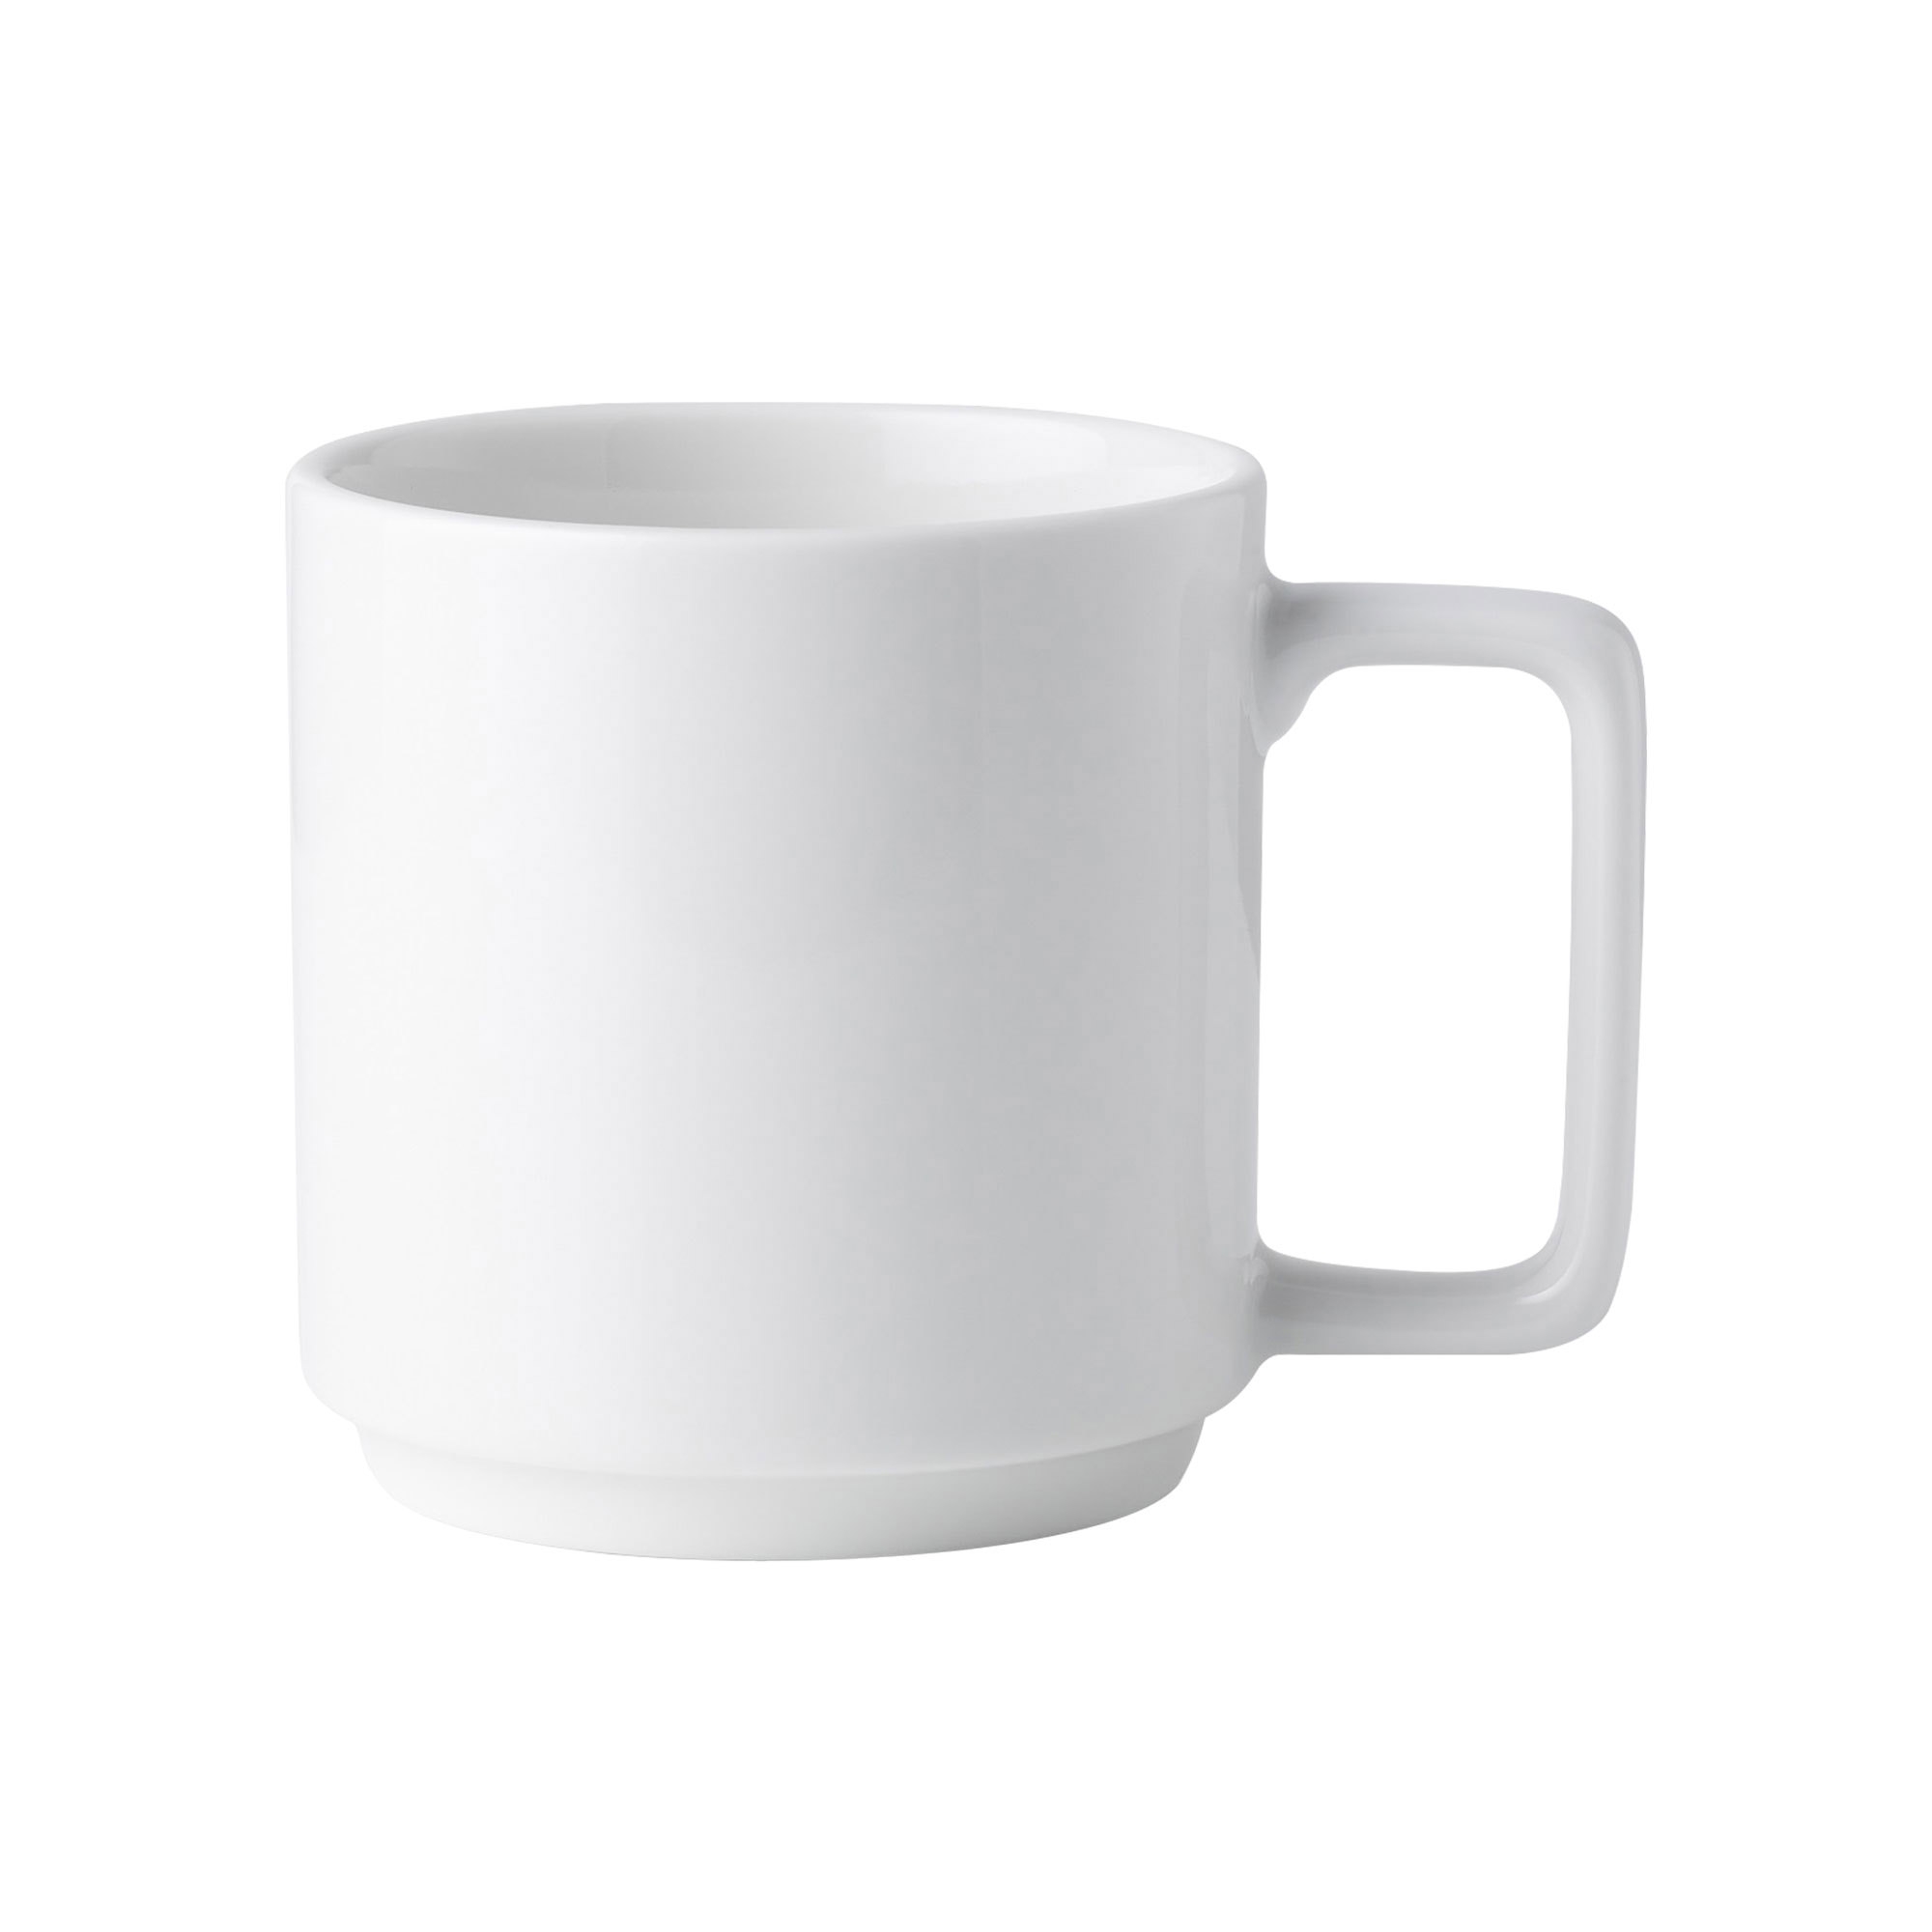 Noritake Stax White Mug 450ml Set of 4 Image 2